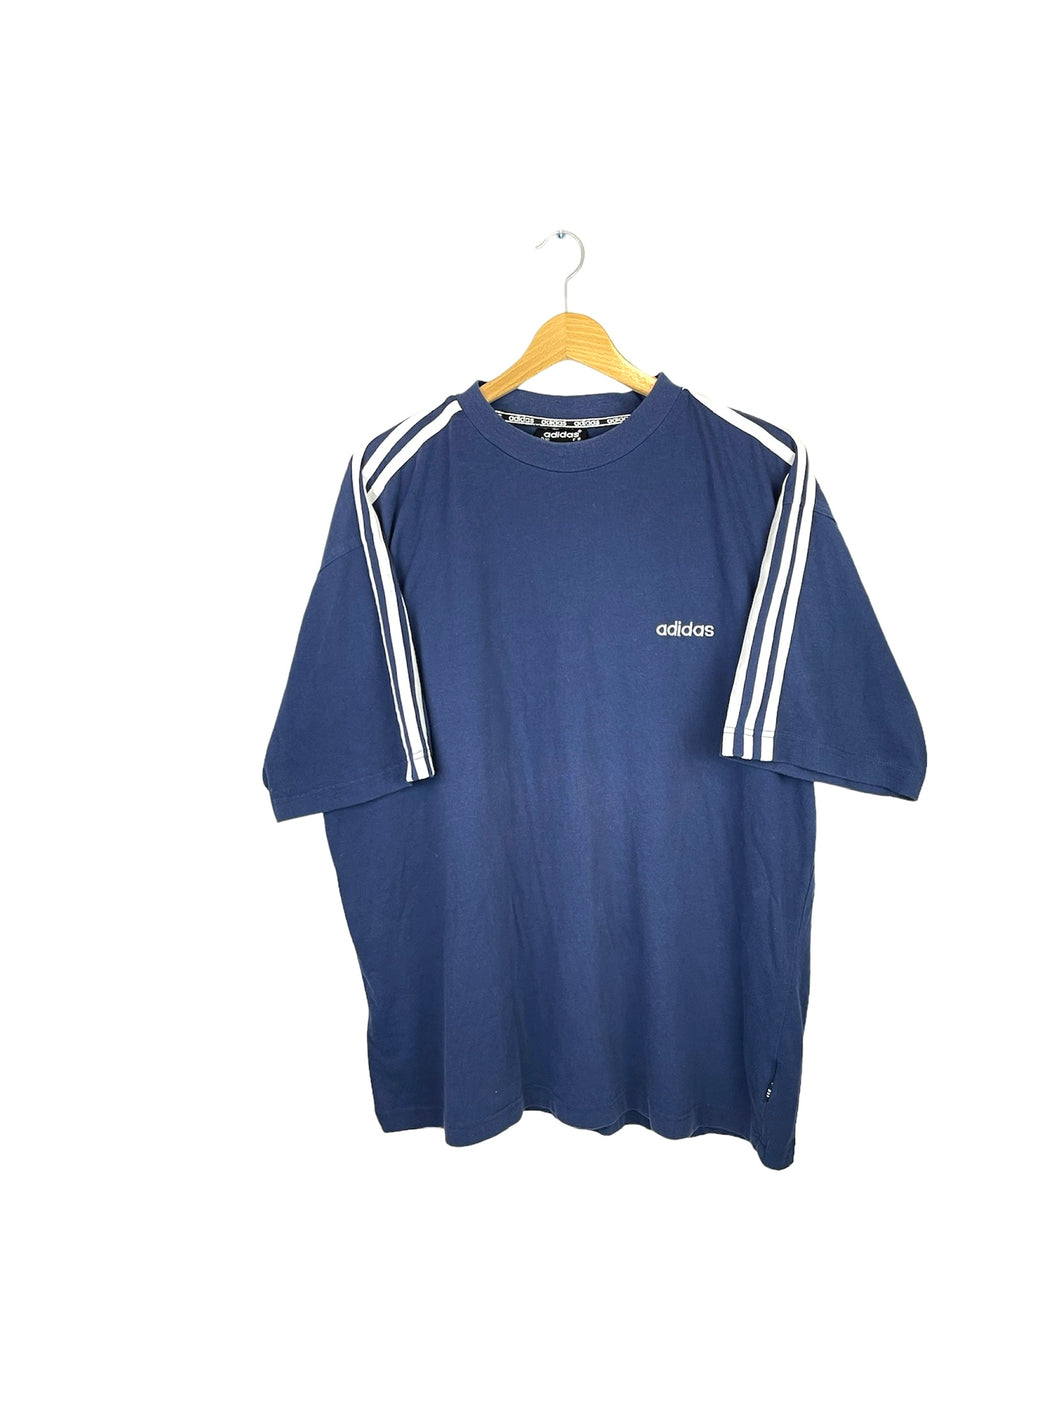 Adidas Tee Shirt - XLarge